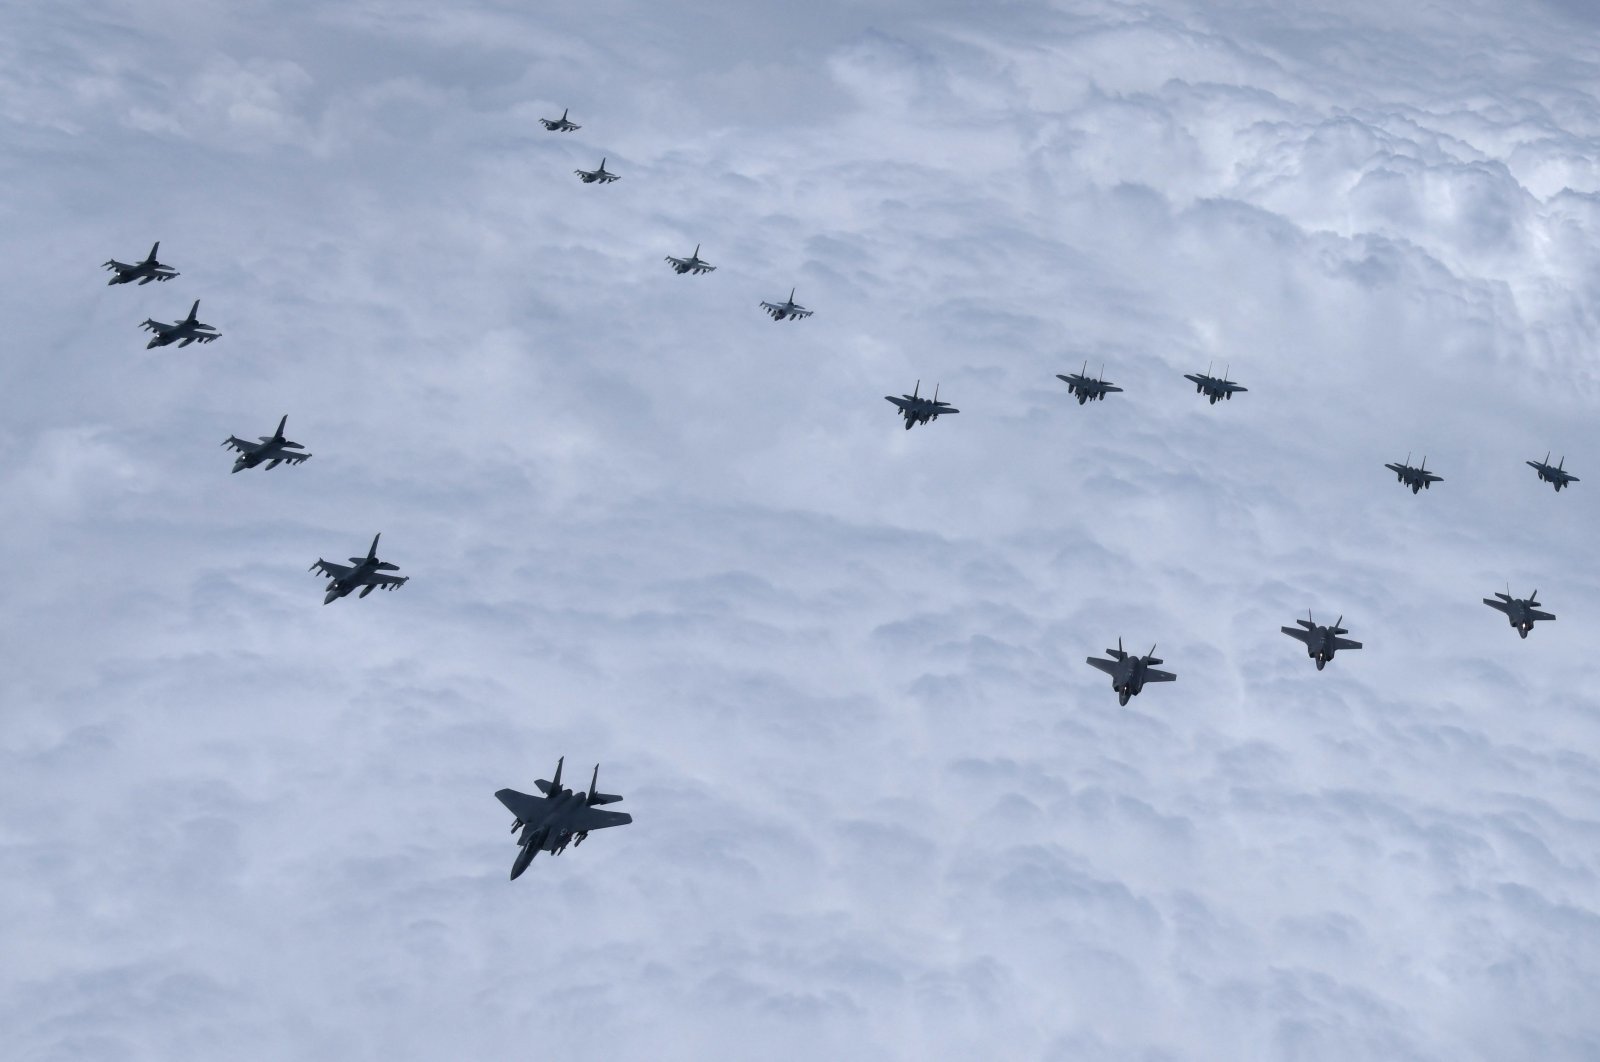 Etelä-Korean sotakoneet, mukaan lukien F-35-stealth-hävittäjät, ja Yhdysvaltain F-16-suihkukoneet, jotka lentävät taktisessa kokoonpanossa Etelä-Korean ilmatilassa, 7.6.2022. (Kuva Etelä-Korean puolustusministeriö AFP:n kautta)